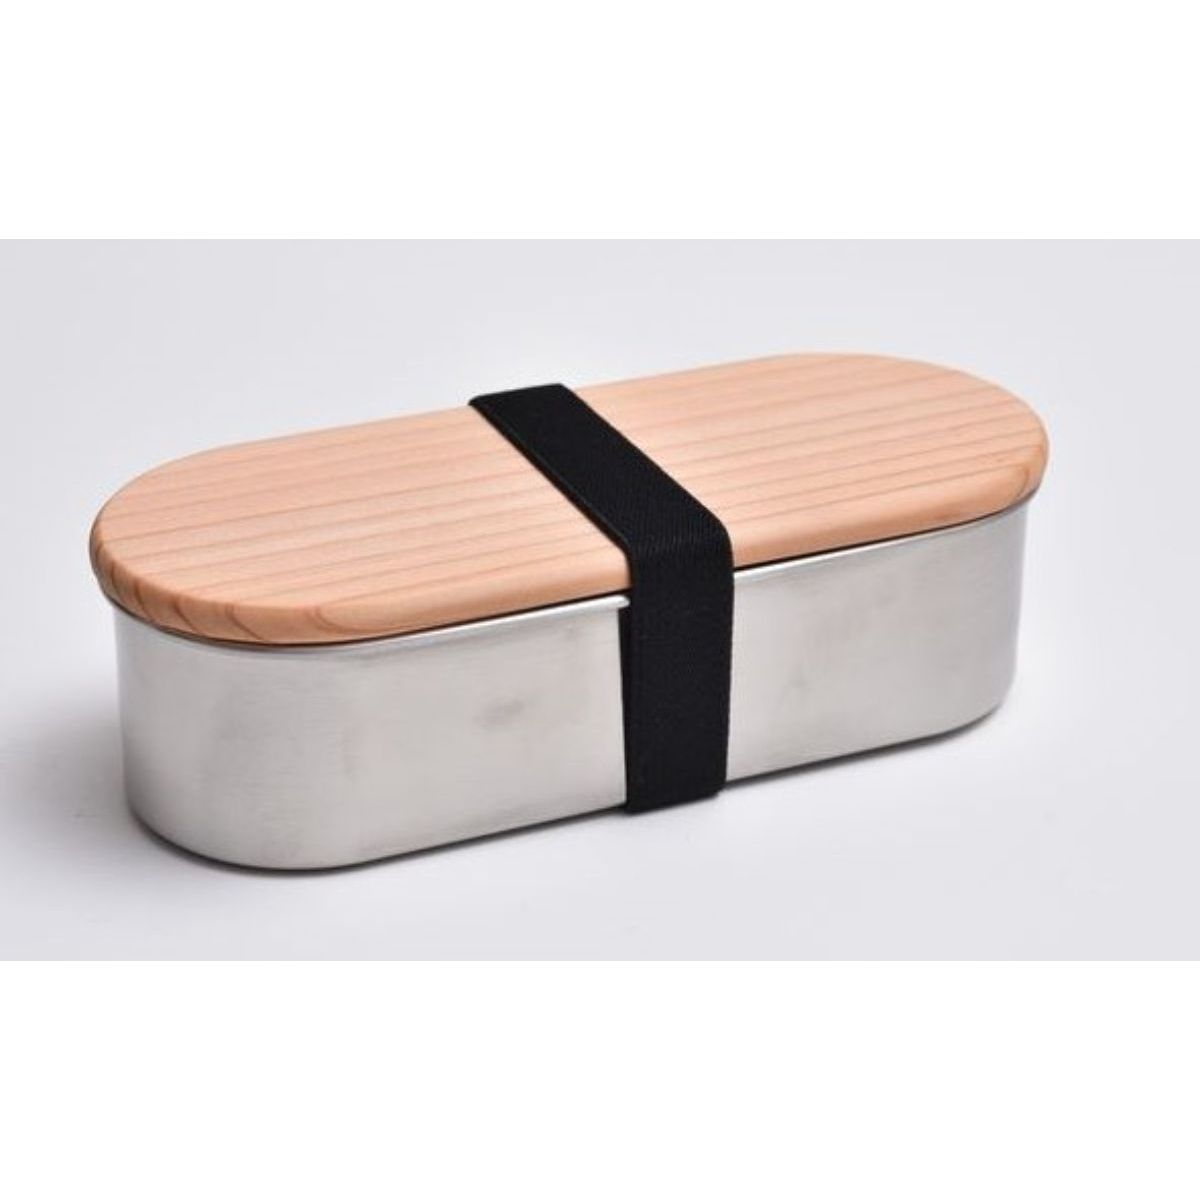 HANAKO 木蓋つきフードボックスステンレス小判型 日本製